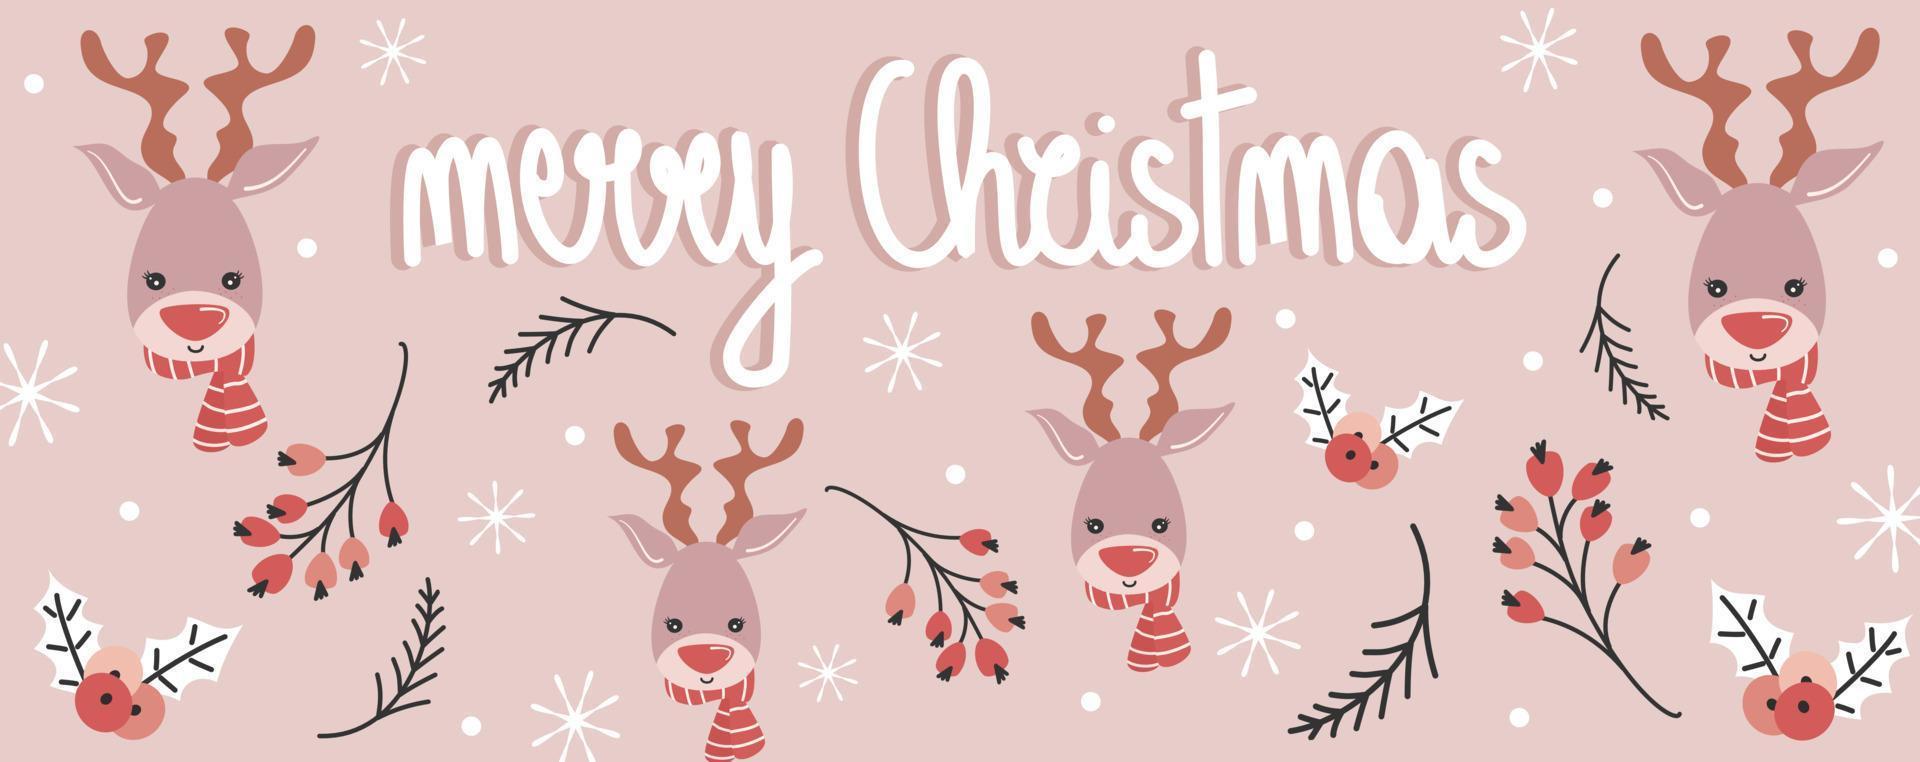 linda Días festivos vector diseño horizontal bandera modelo con mano dibujado letras alegre Navidad texto, dibujos animados personaje reno, rama con bayas, acebo, nieve y copos de nieve en rosado antecedentes